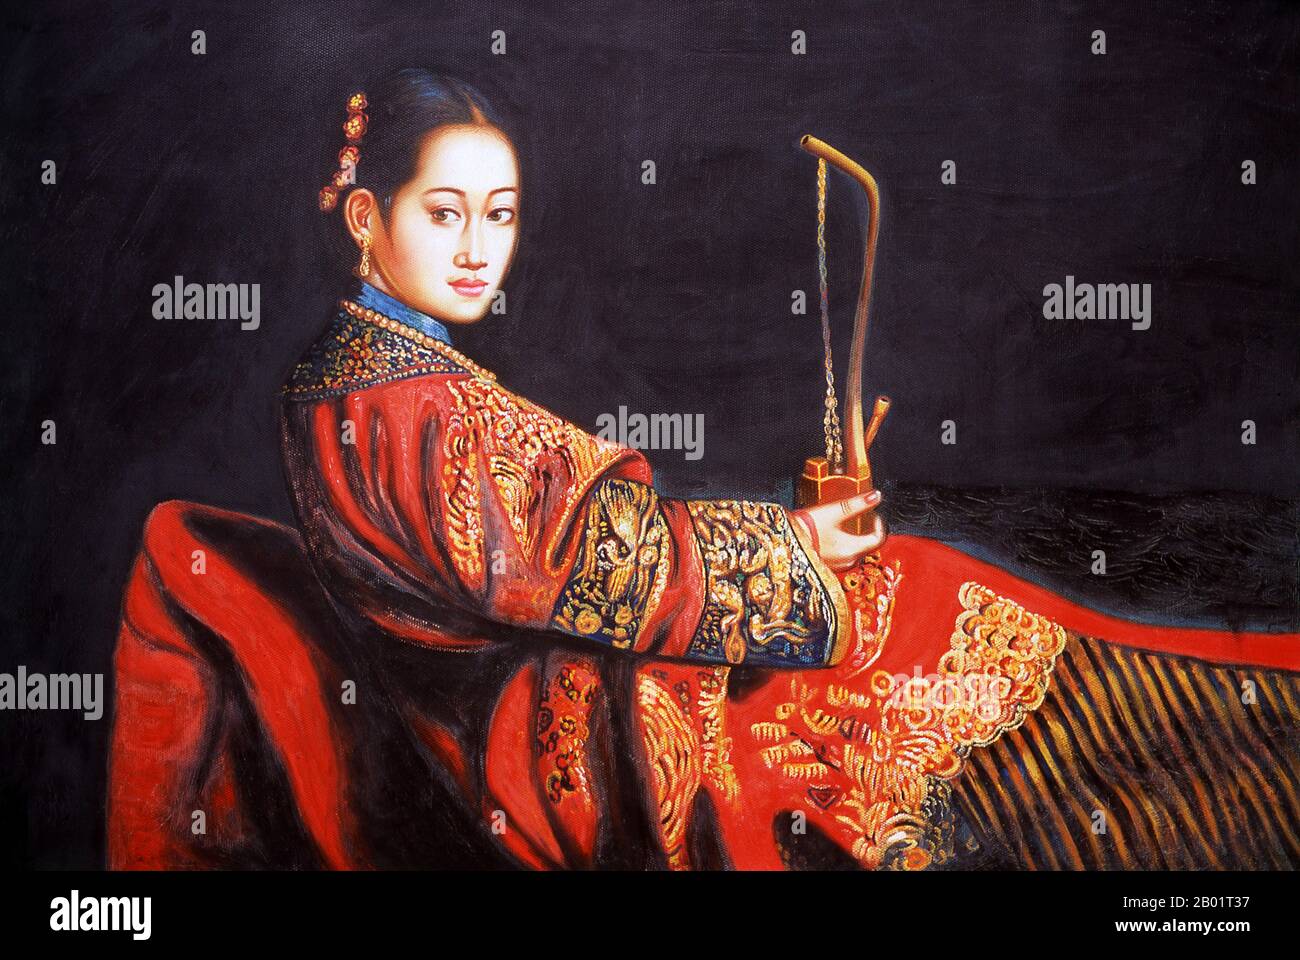 China: Konsorte Rong oder Iparhan, „die duftende Konkubine“ (1734-1788), des Kaisers Qianlong. Zeitgenössische Malerei (Ende des 20. Jahrhunderts) in Chinibagh, Kashgar. Die duftende Konkubine (chinesisch Xiāngfēi; uigurisch Iparxan, Khoja Iparhan) ist eine Figur der chinesischen Legende, die vom Kaiser Qianlong im 18. Jahrhundert als Gemahlin genommen wurde. Obwohl die Geschichten über sie für mythisch gehalten werden, basieren sie möglicherweise auf einer echten Konkubine aus Westchina, die 1760 in den Harem des Kaisers eintrat und den Hoftitel Rong Fei trug. Stockfoto